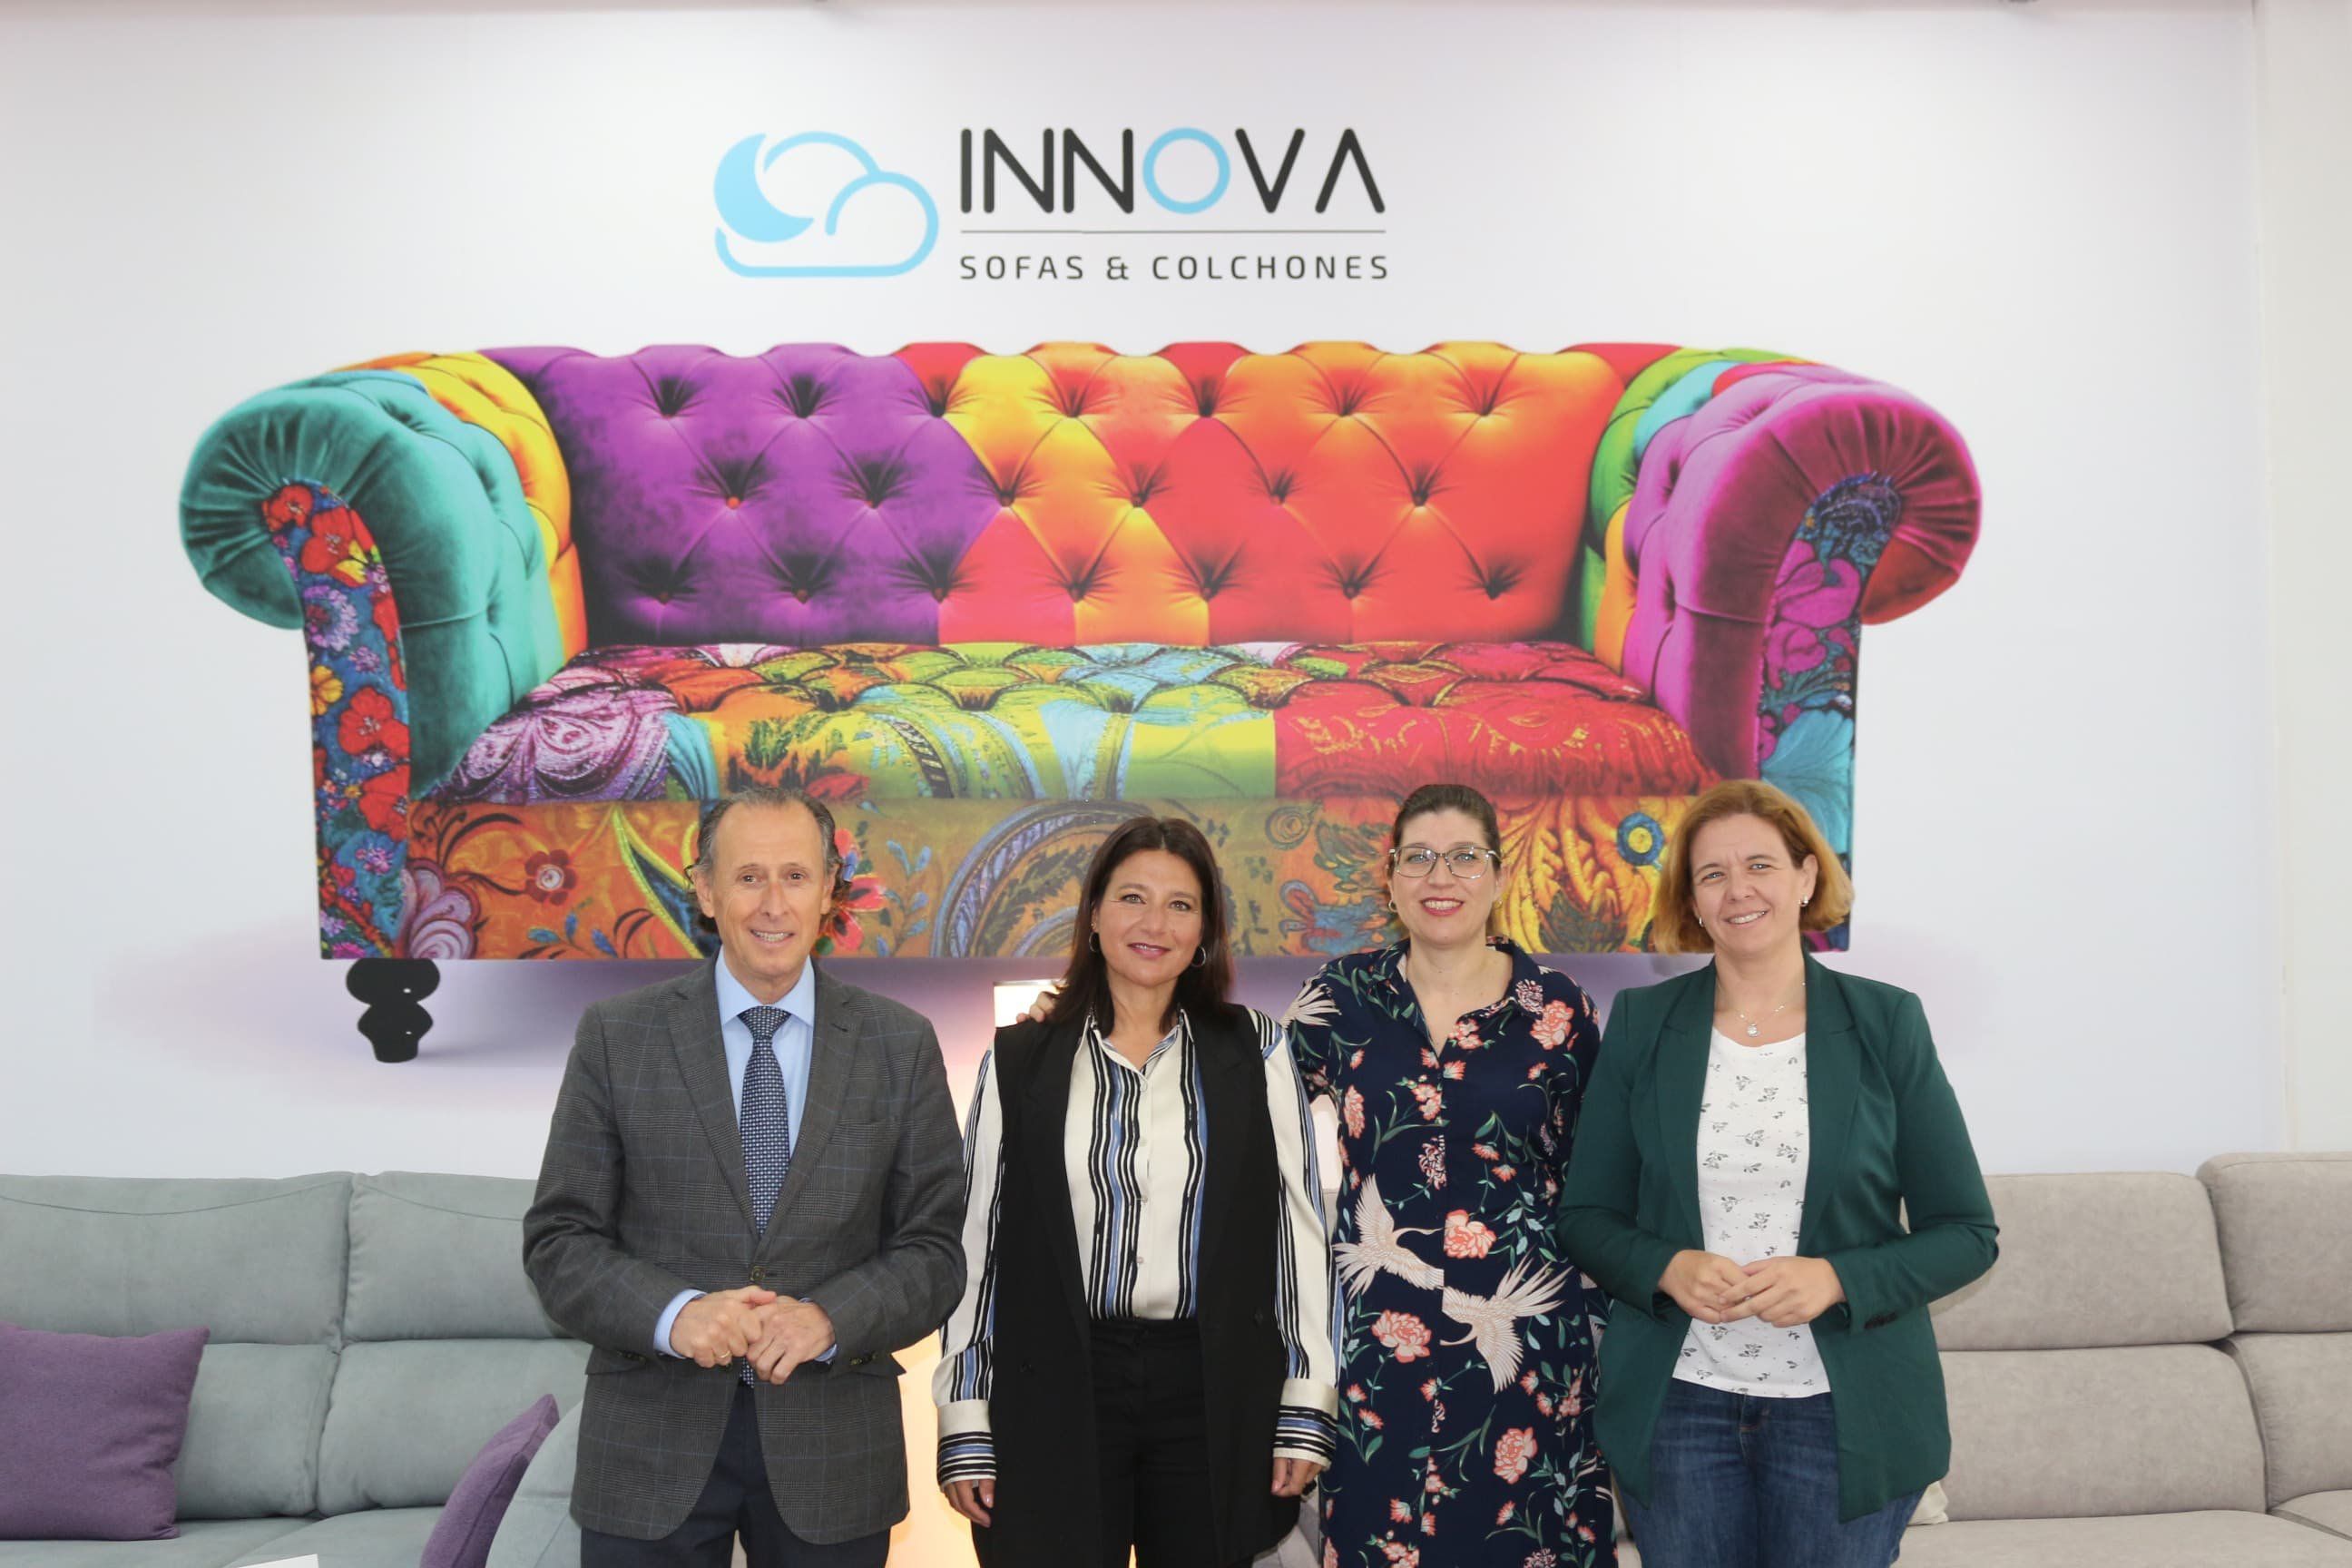 Innova, negocio especializado en sofás y colchones con más de 25 años en Chiclana.